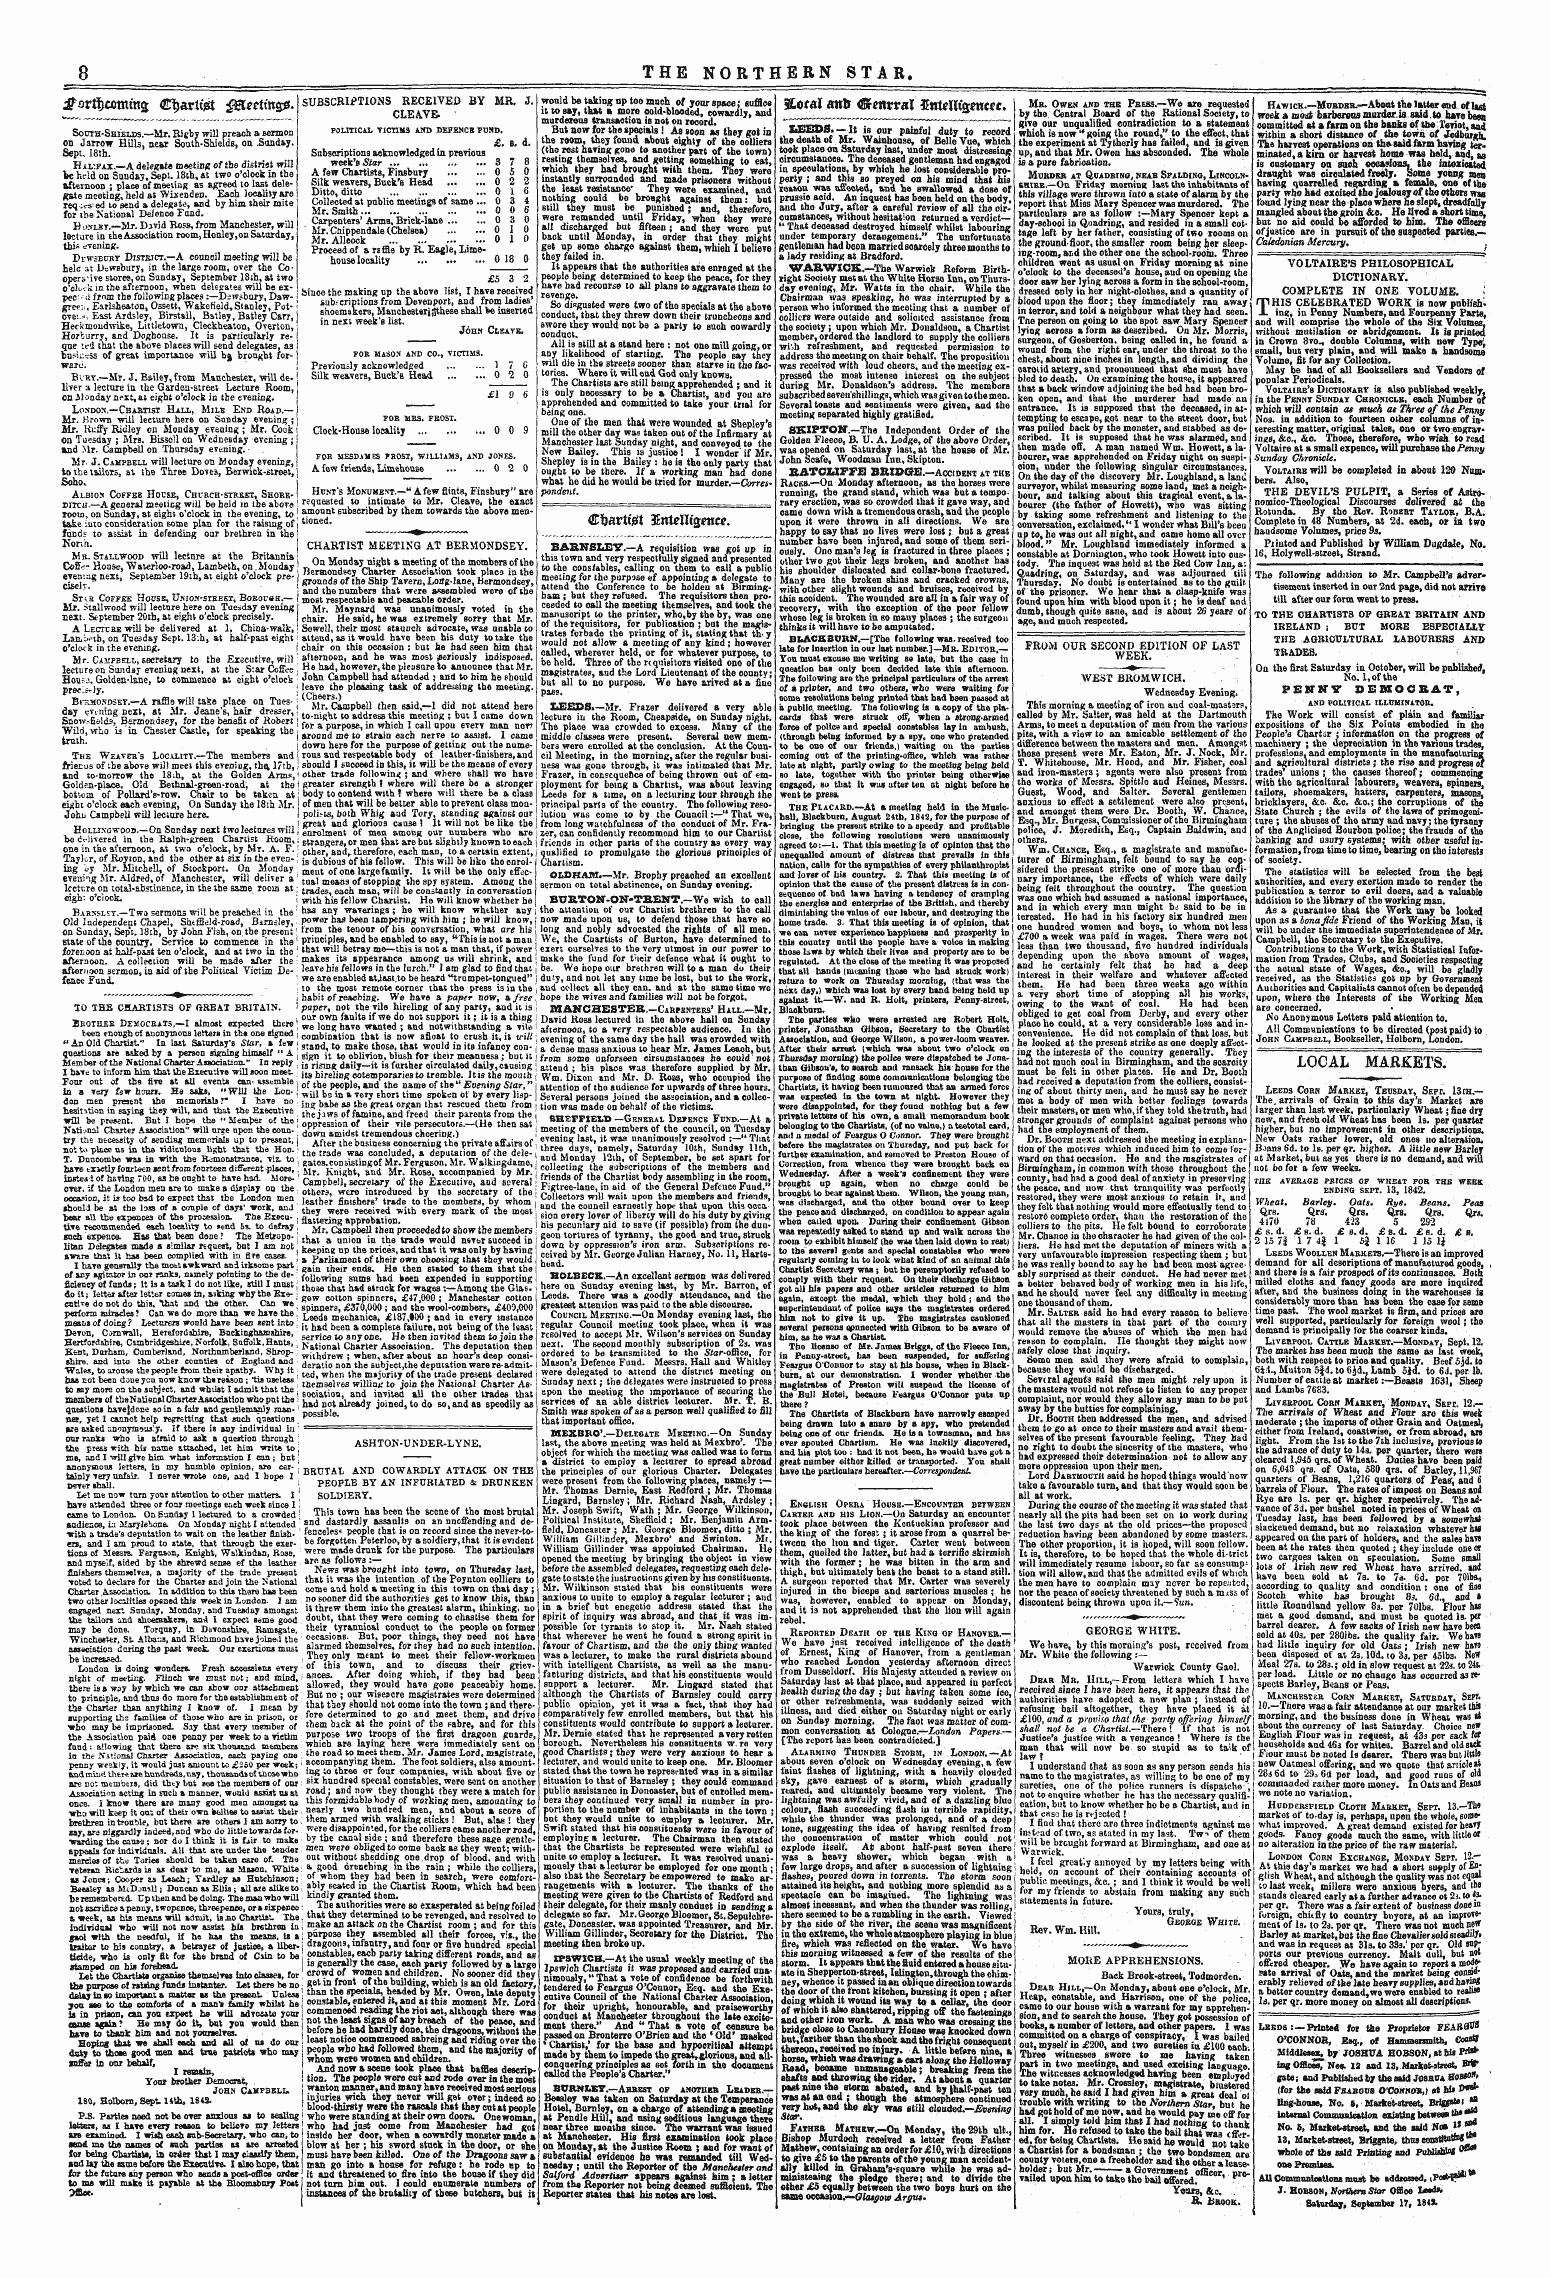 Northern Star (1837-1852): jS F Y, 1st edition - 3f$Rt!)Commg; C^Artt ' St $&Eetin&